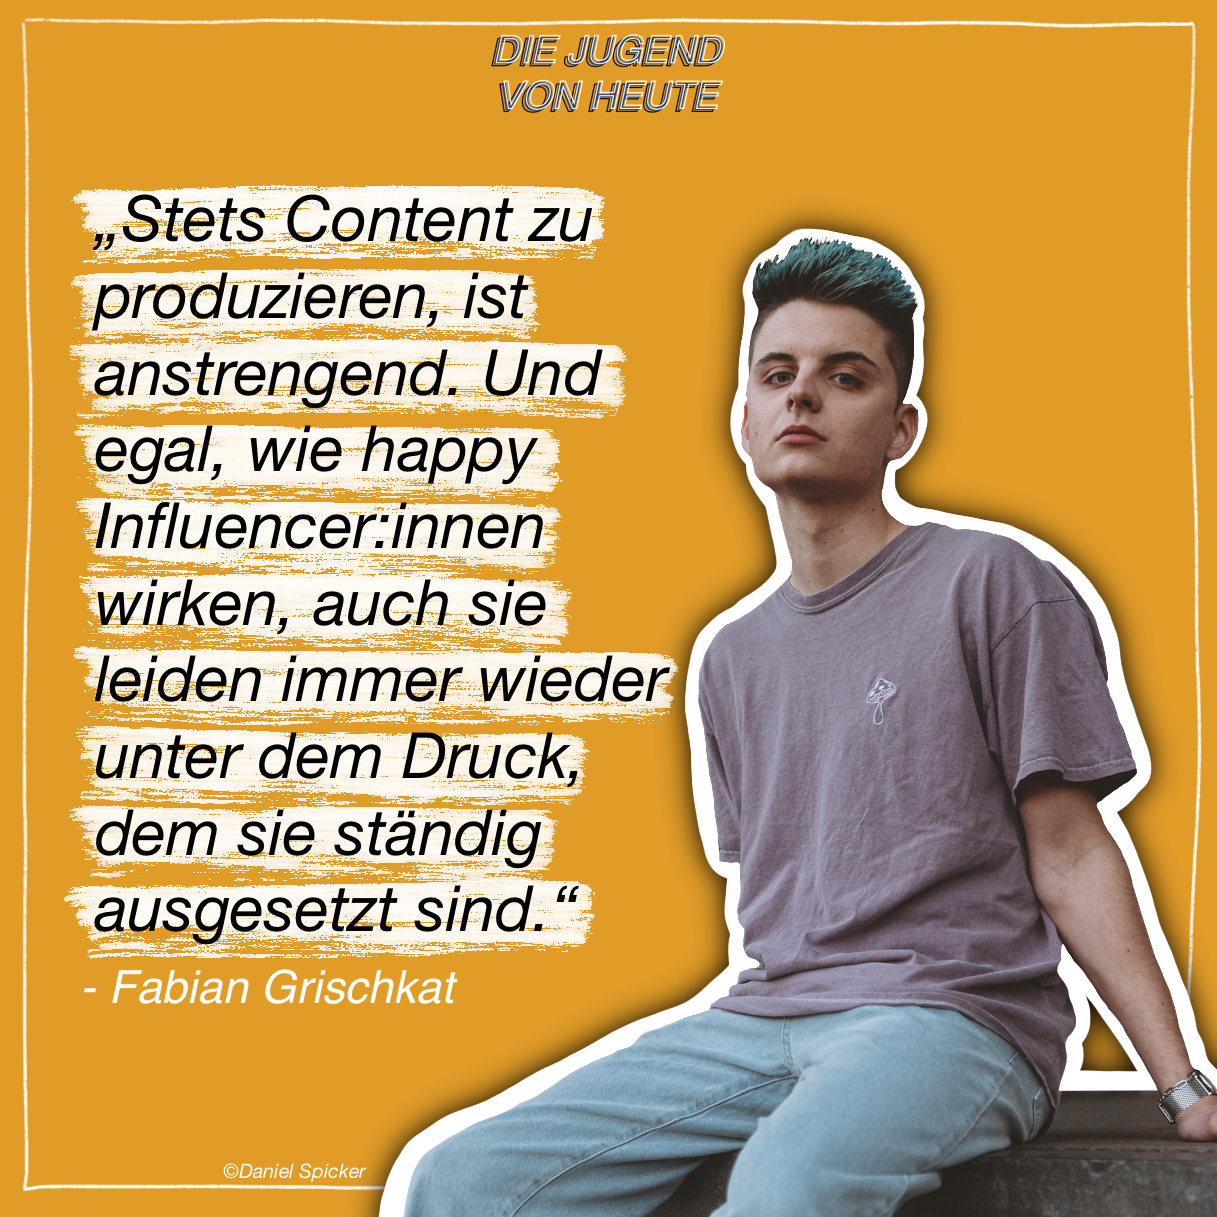 Podcast: „Die Jugend von heute“ – Folge 2: Mit Fabian Grischkat